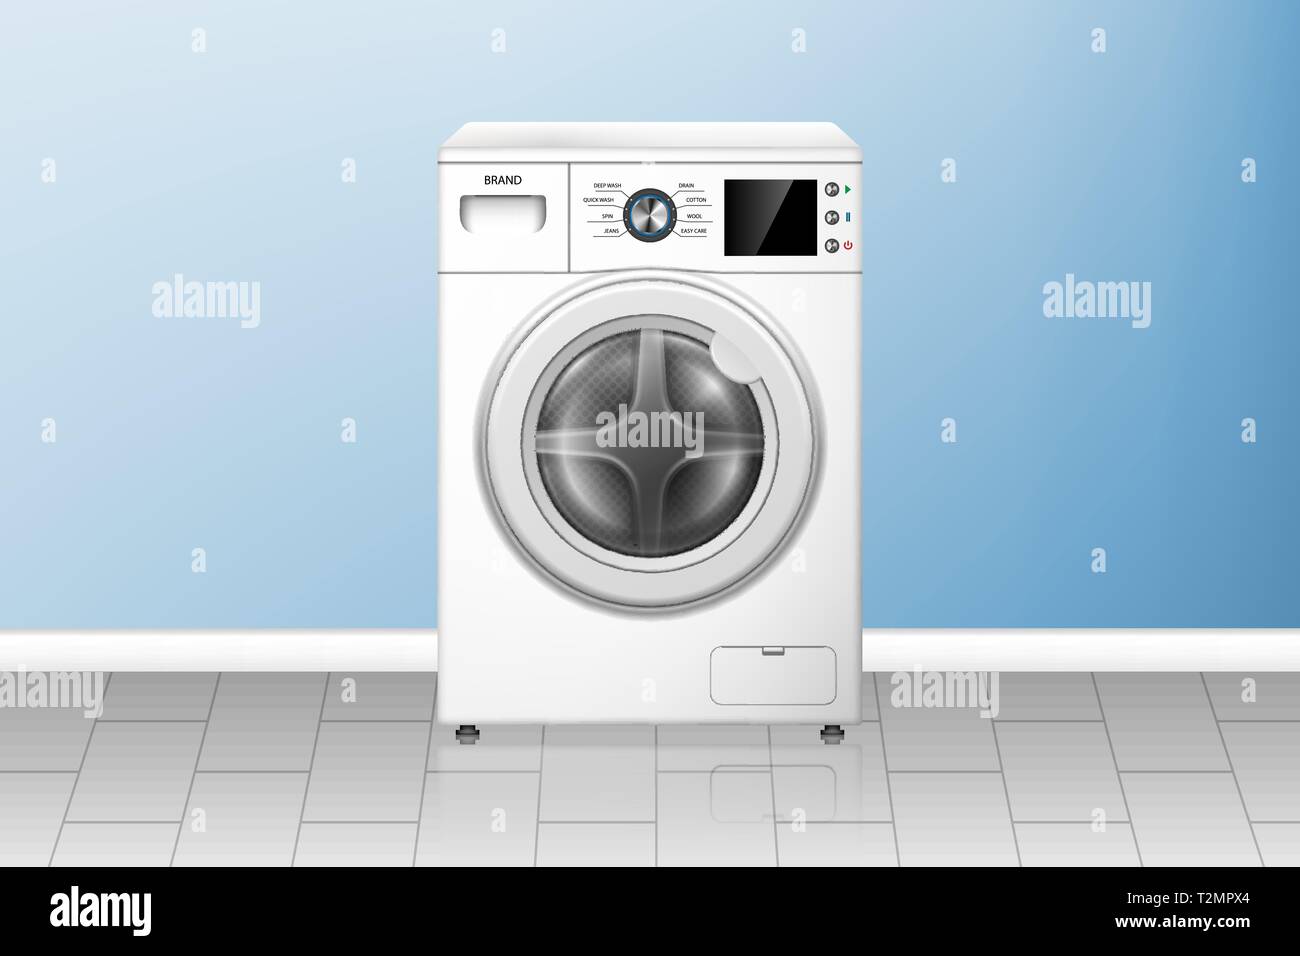 Realistische Waschmaschine in leerer Waschküche. Weiße Unterlegscheibe, Vorderansicht. Moderne Haushaltsgeräte. vektor-Illustration Stock Vektor